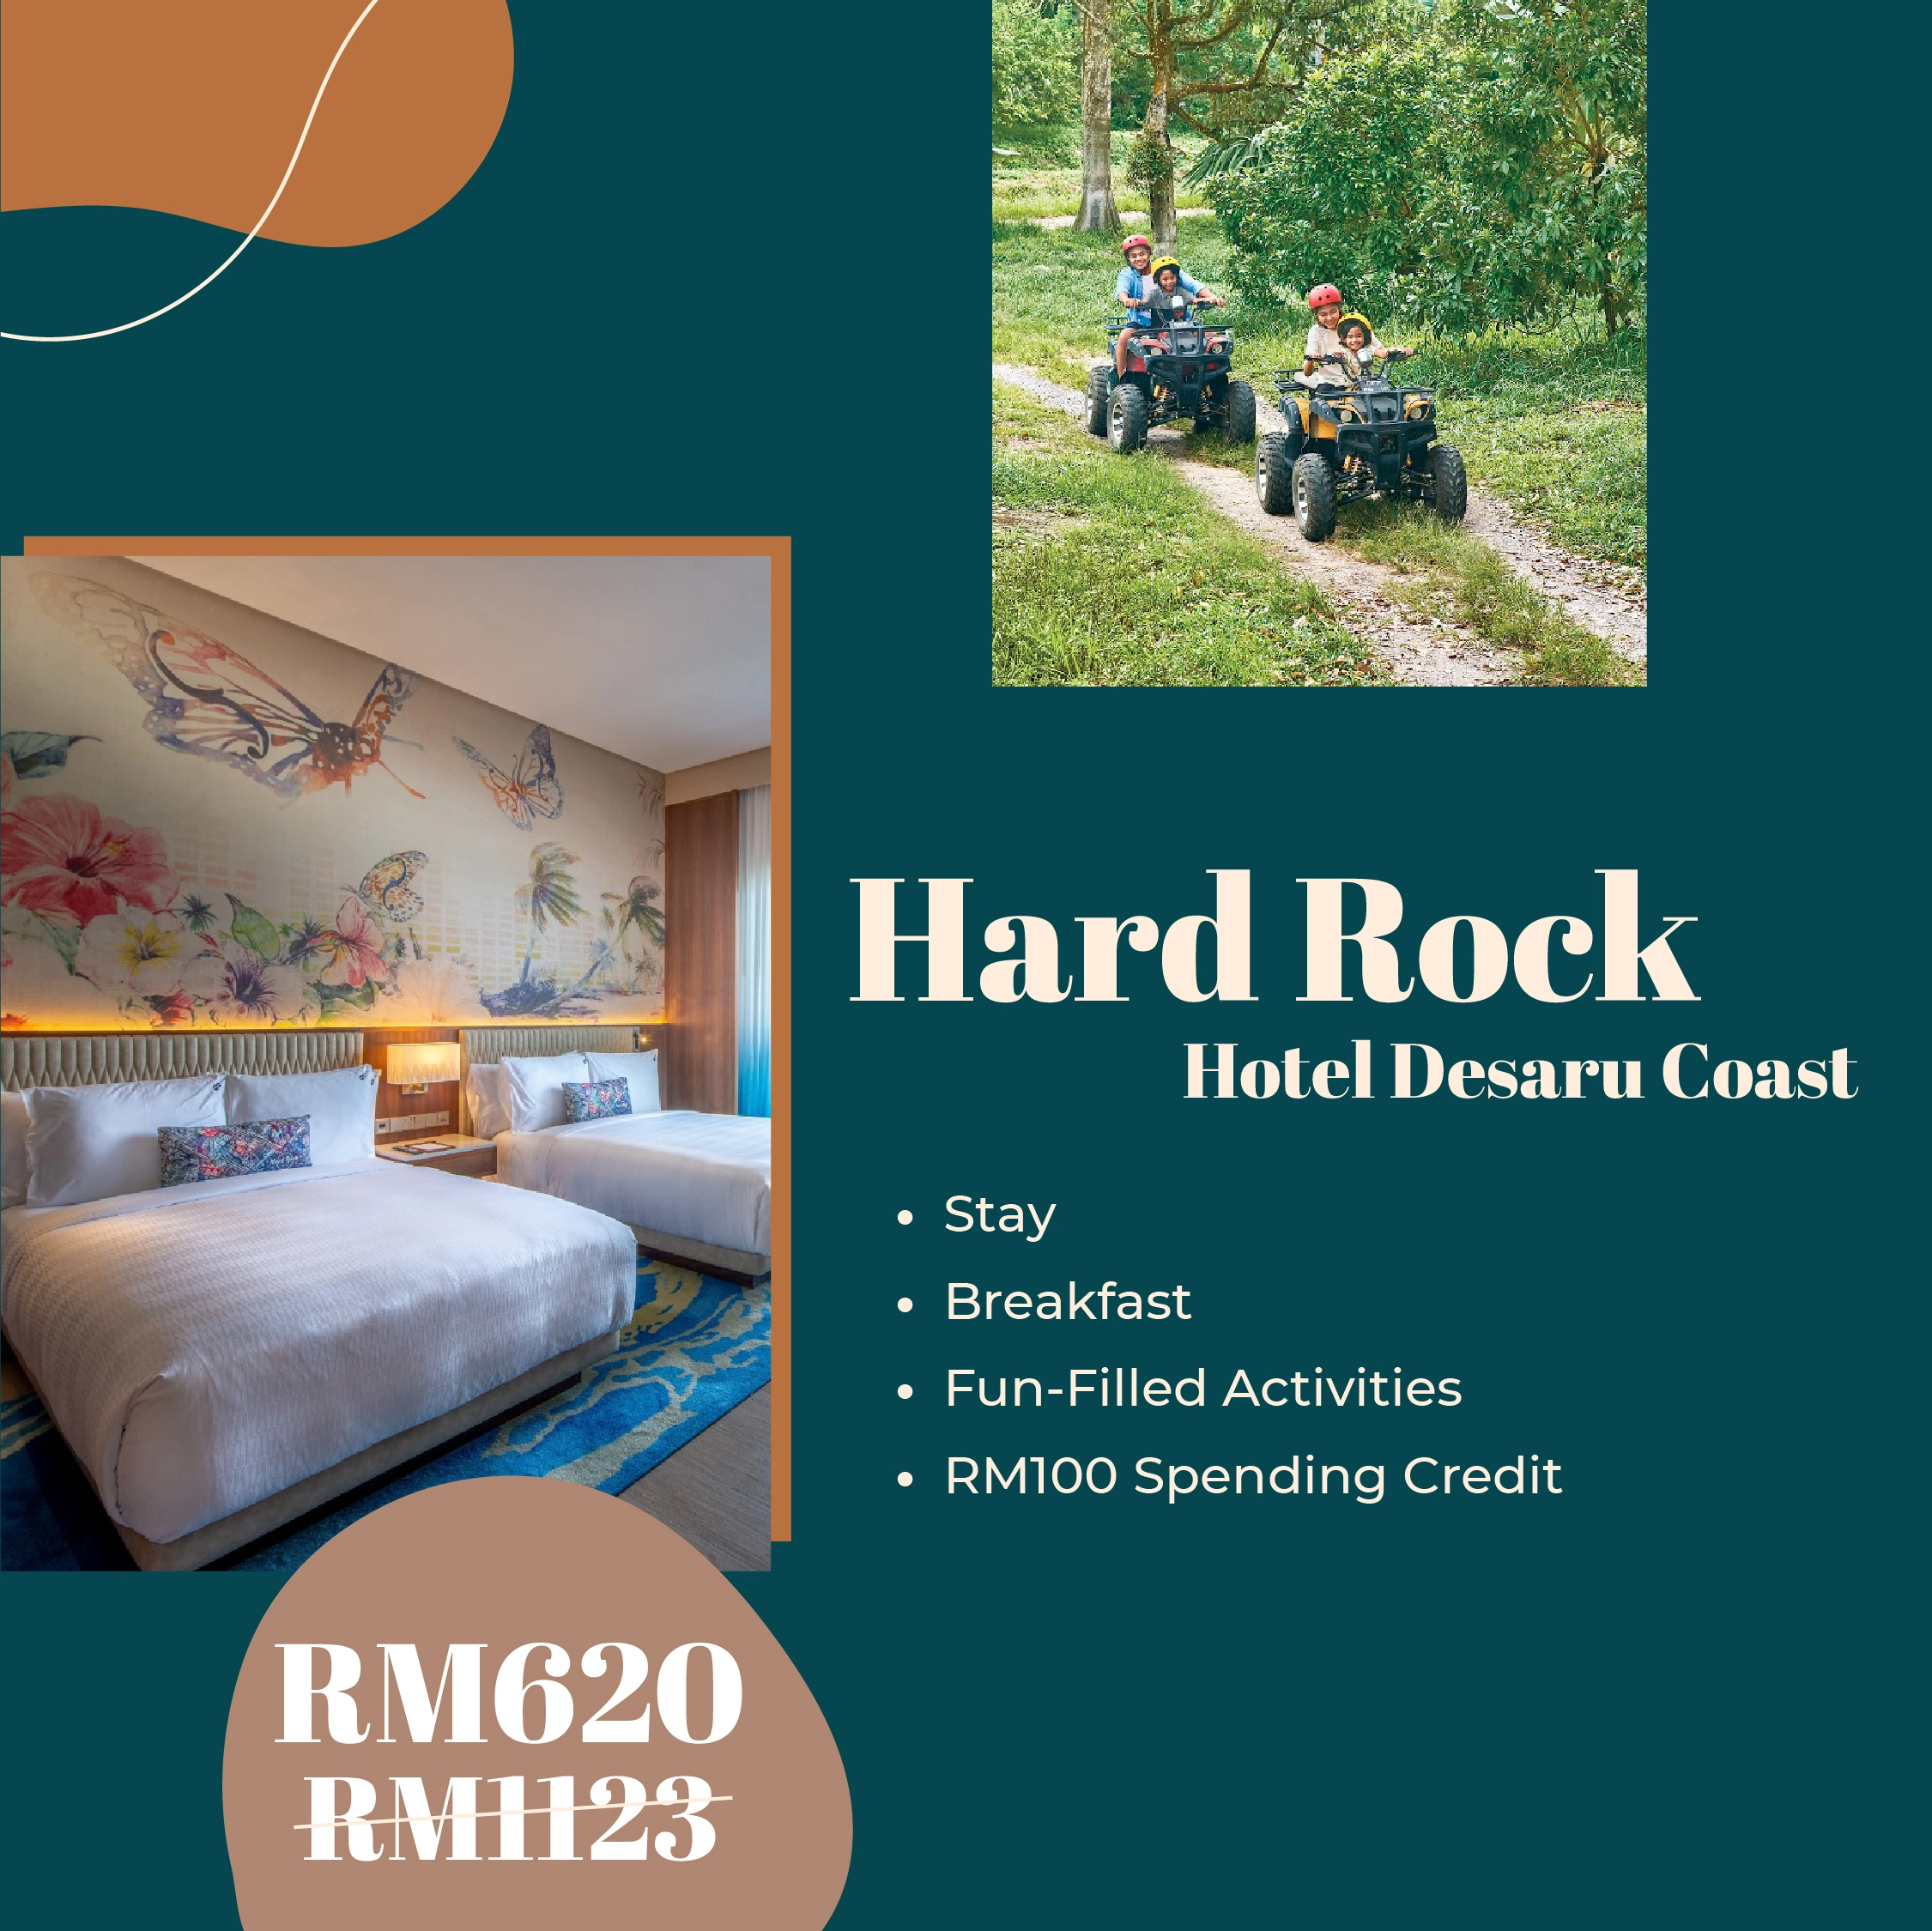 Hard Rock Hotel Desaru Coast Johor Deal Promo